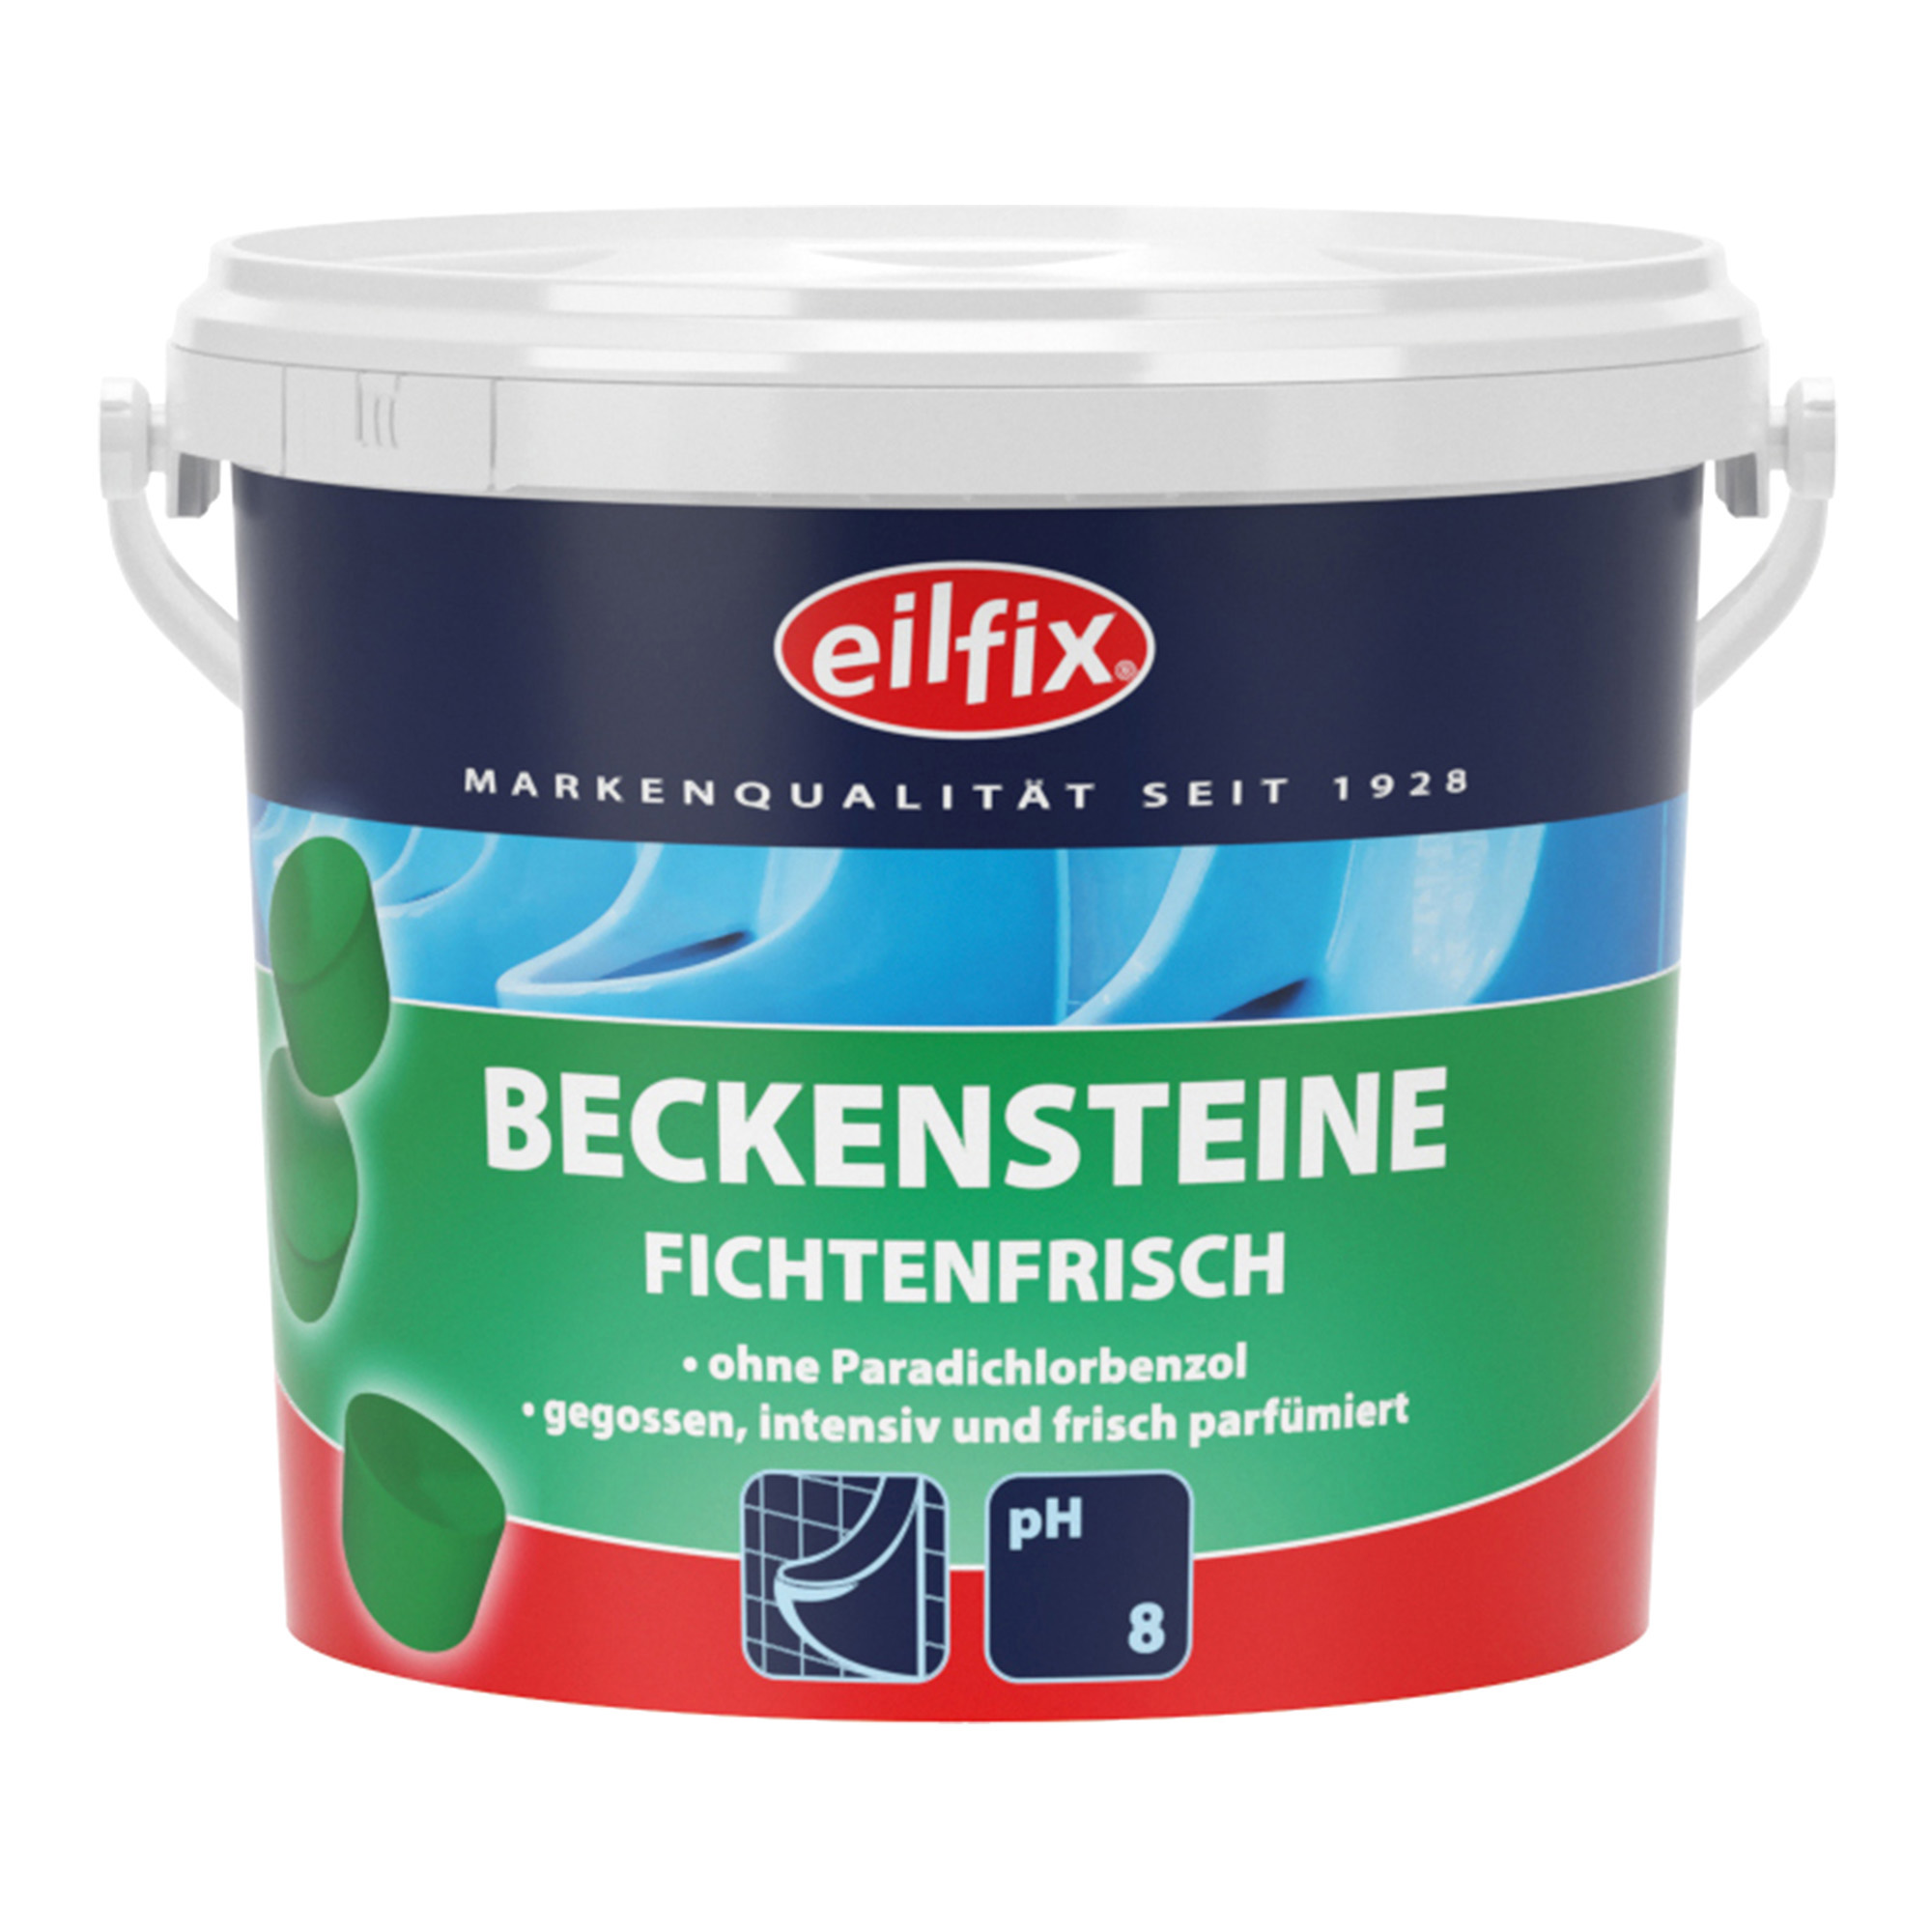 Eilfix Bio-Beckensteine Fichte 1 kg Dose 100128-001-000_1